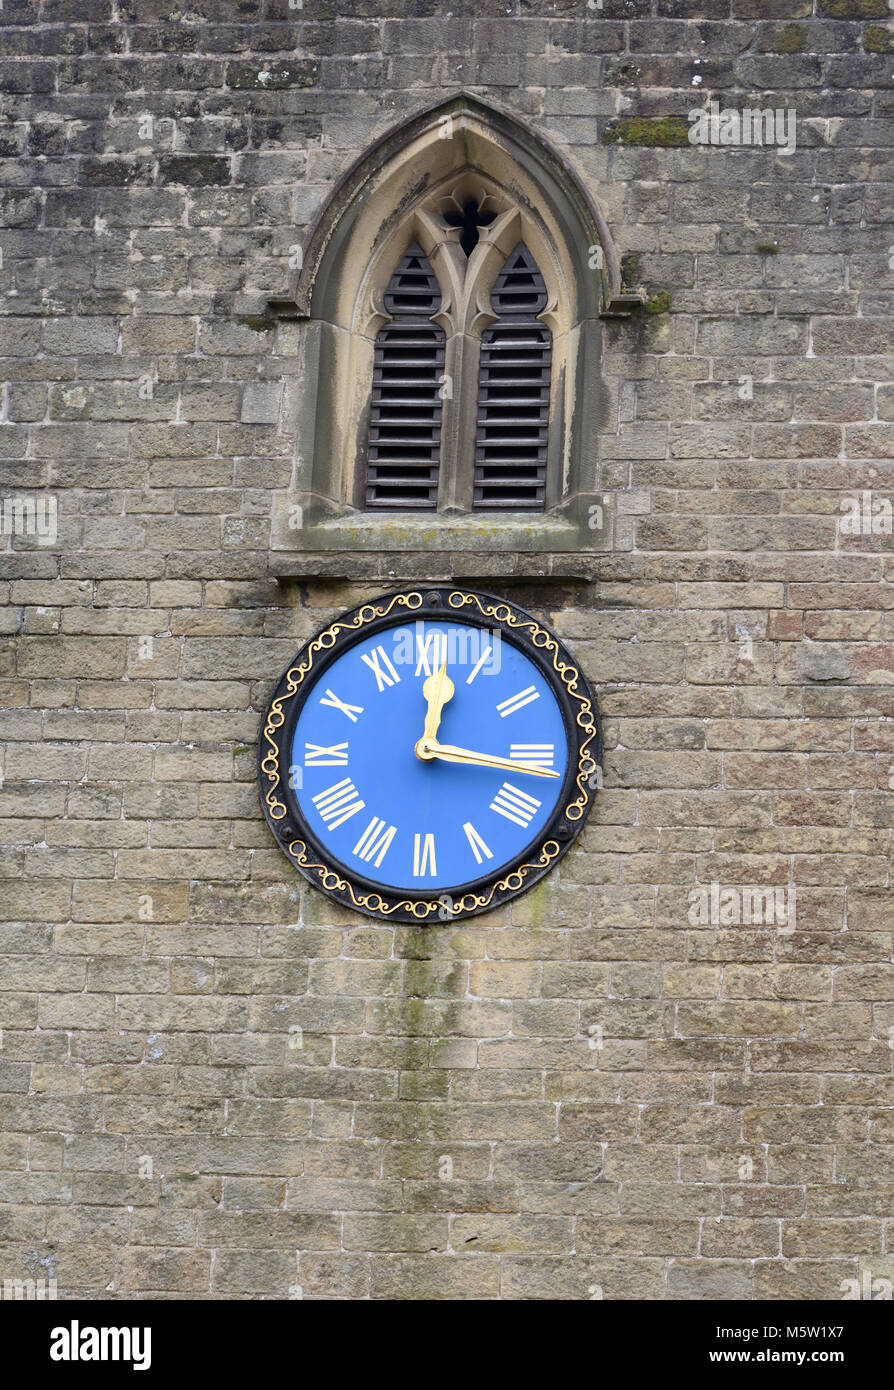 Le bleu de l'horloge situé dans la tour en pierre de l'église St Martin montre trimestre passé douze. Stoney Middleton, Derbyshire, Angleterre, Royaume-Uni. Banque D'Images